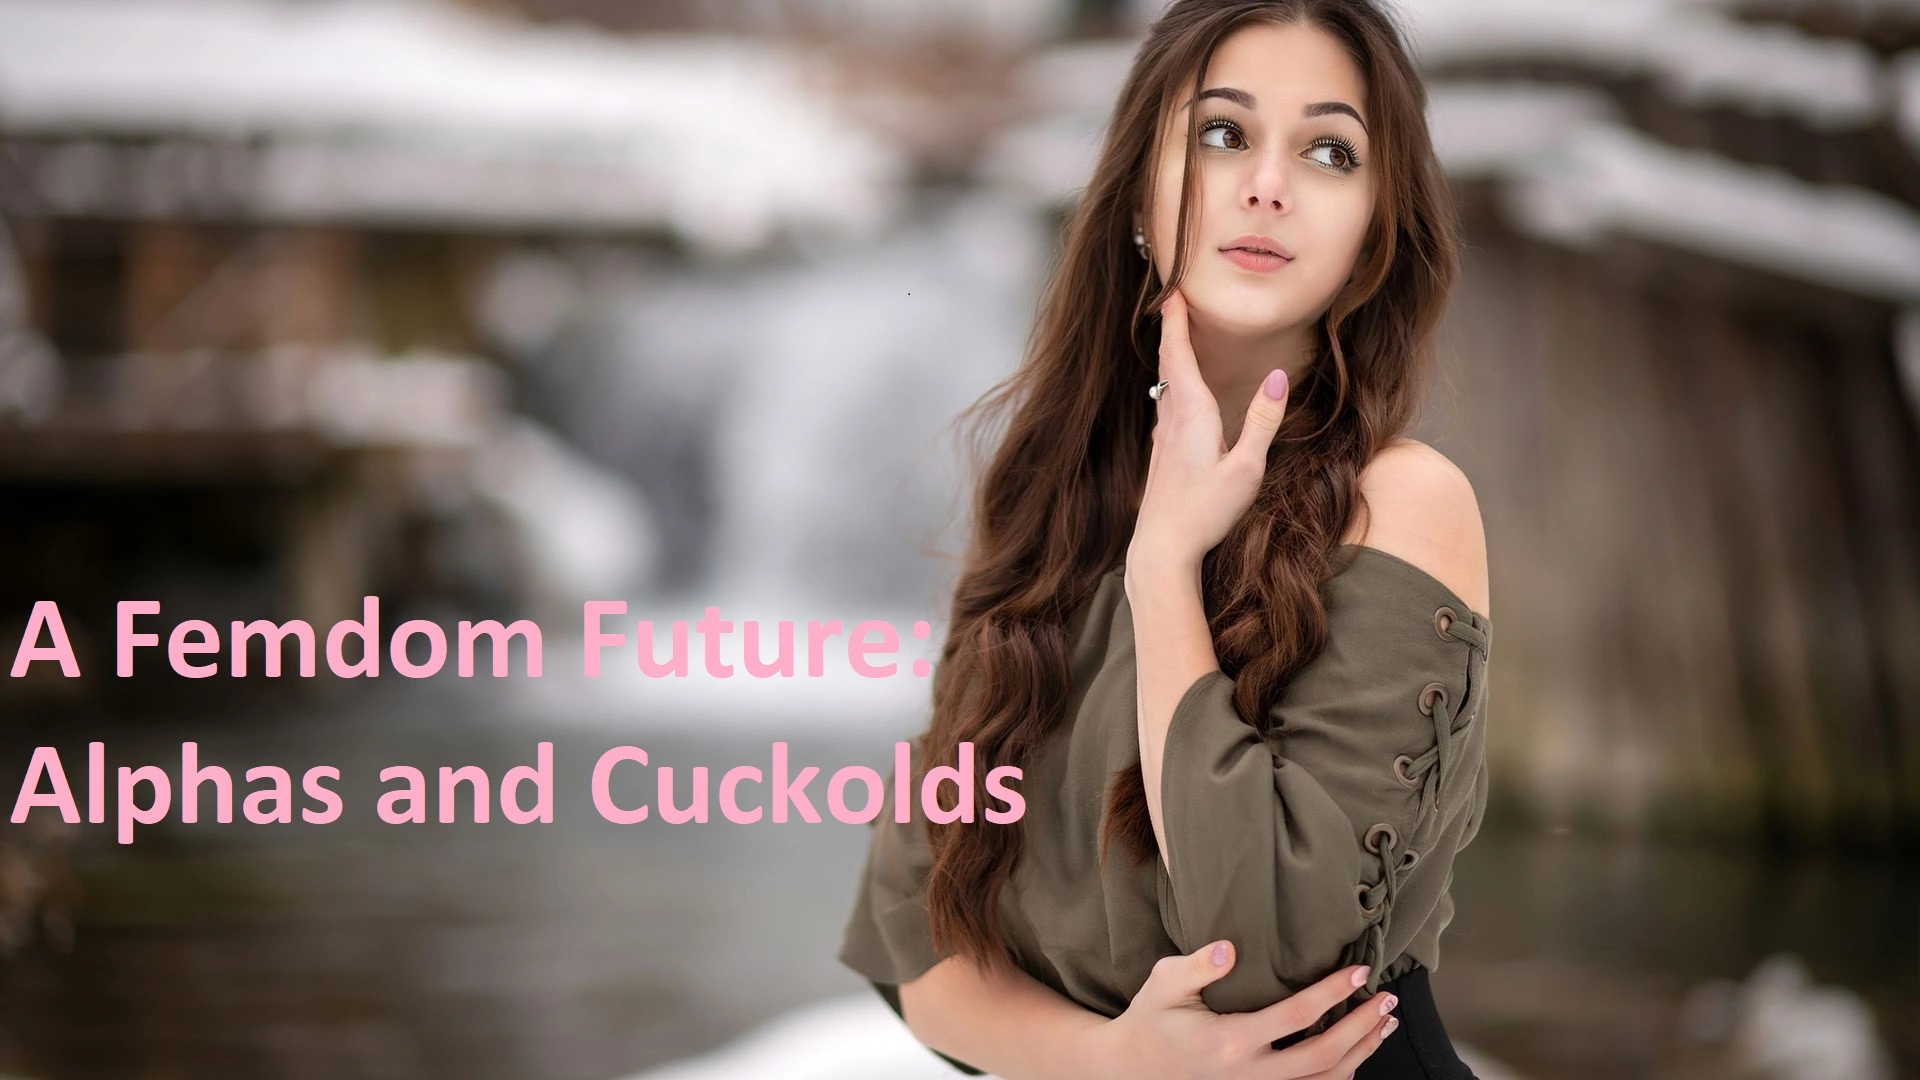 A Femdom Future: Alphas and Cuckolds [v0.3] main image